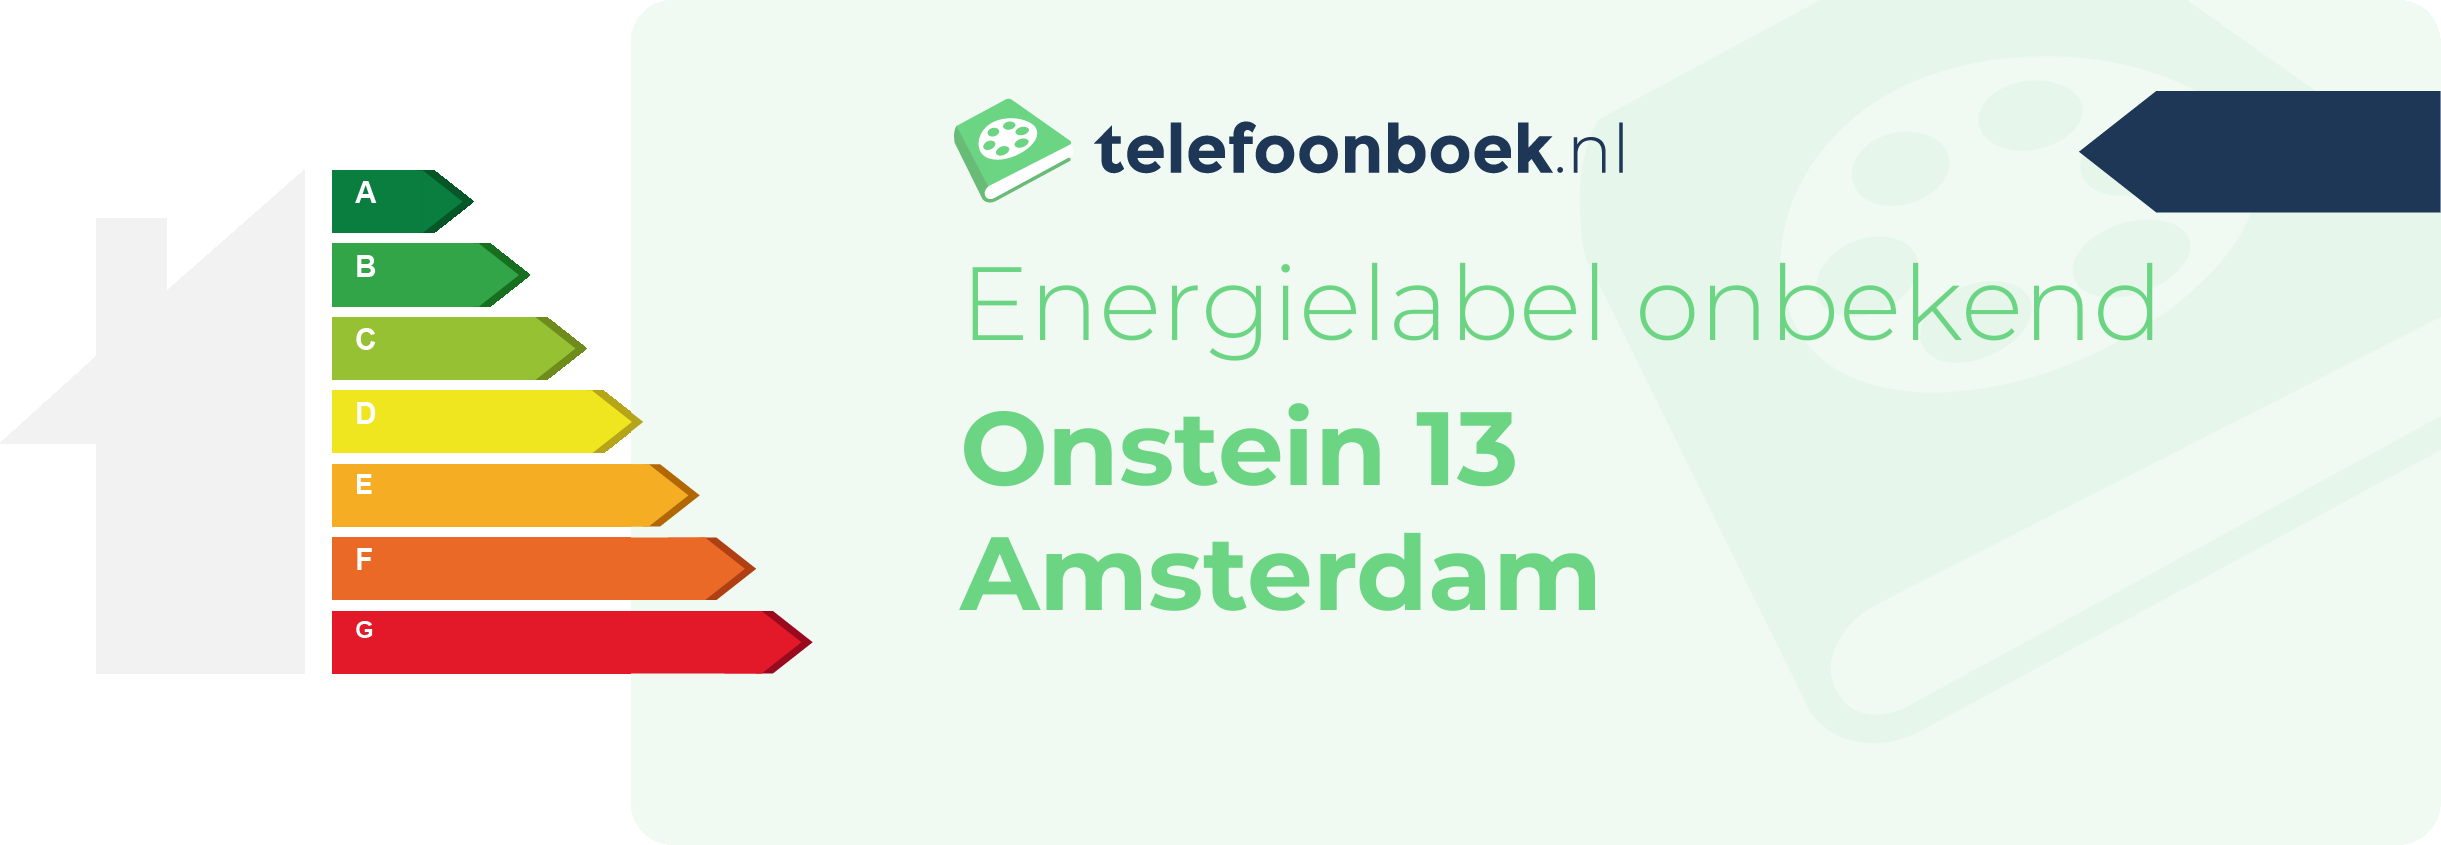 Energielabel Onstein 13 Amsterdam